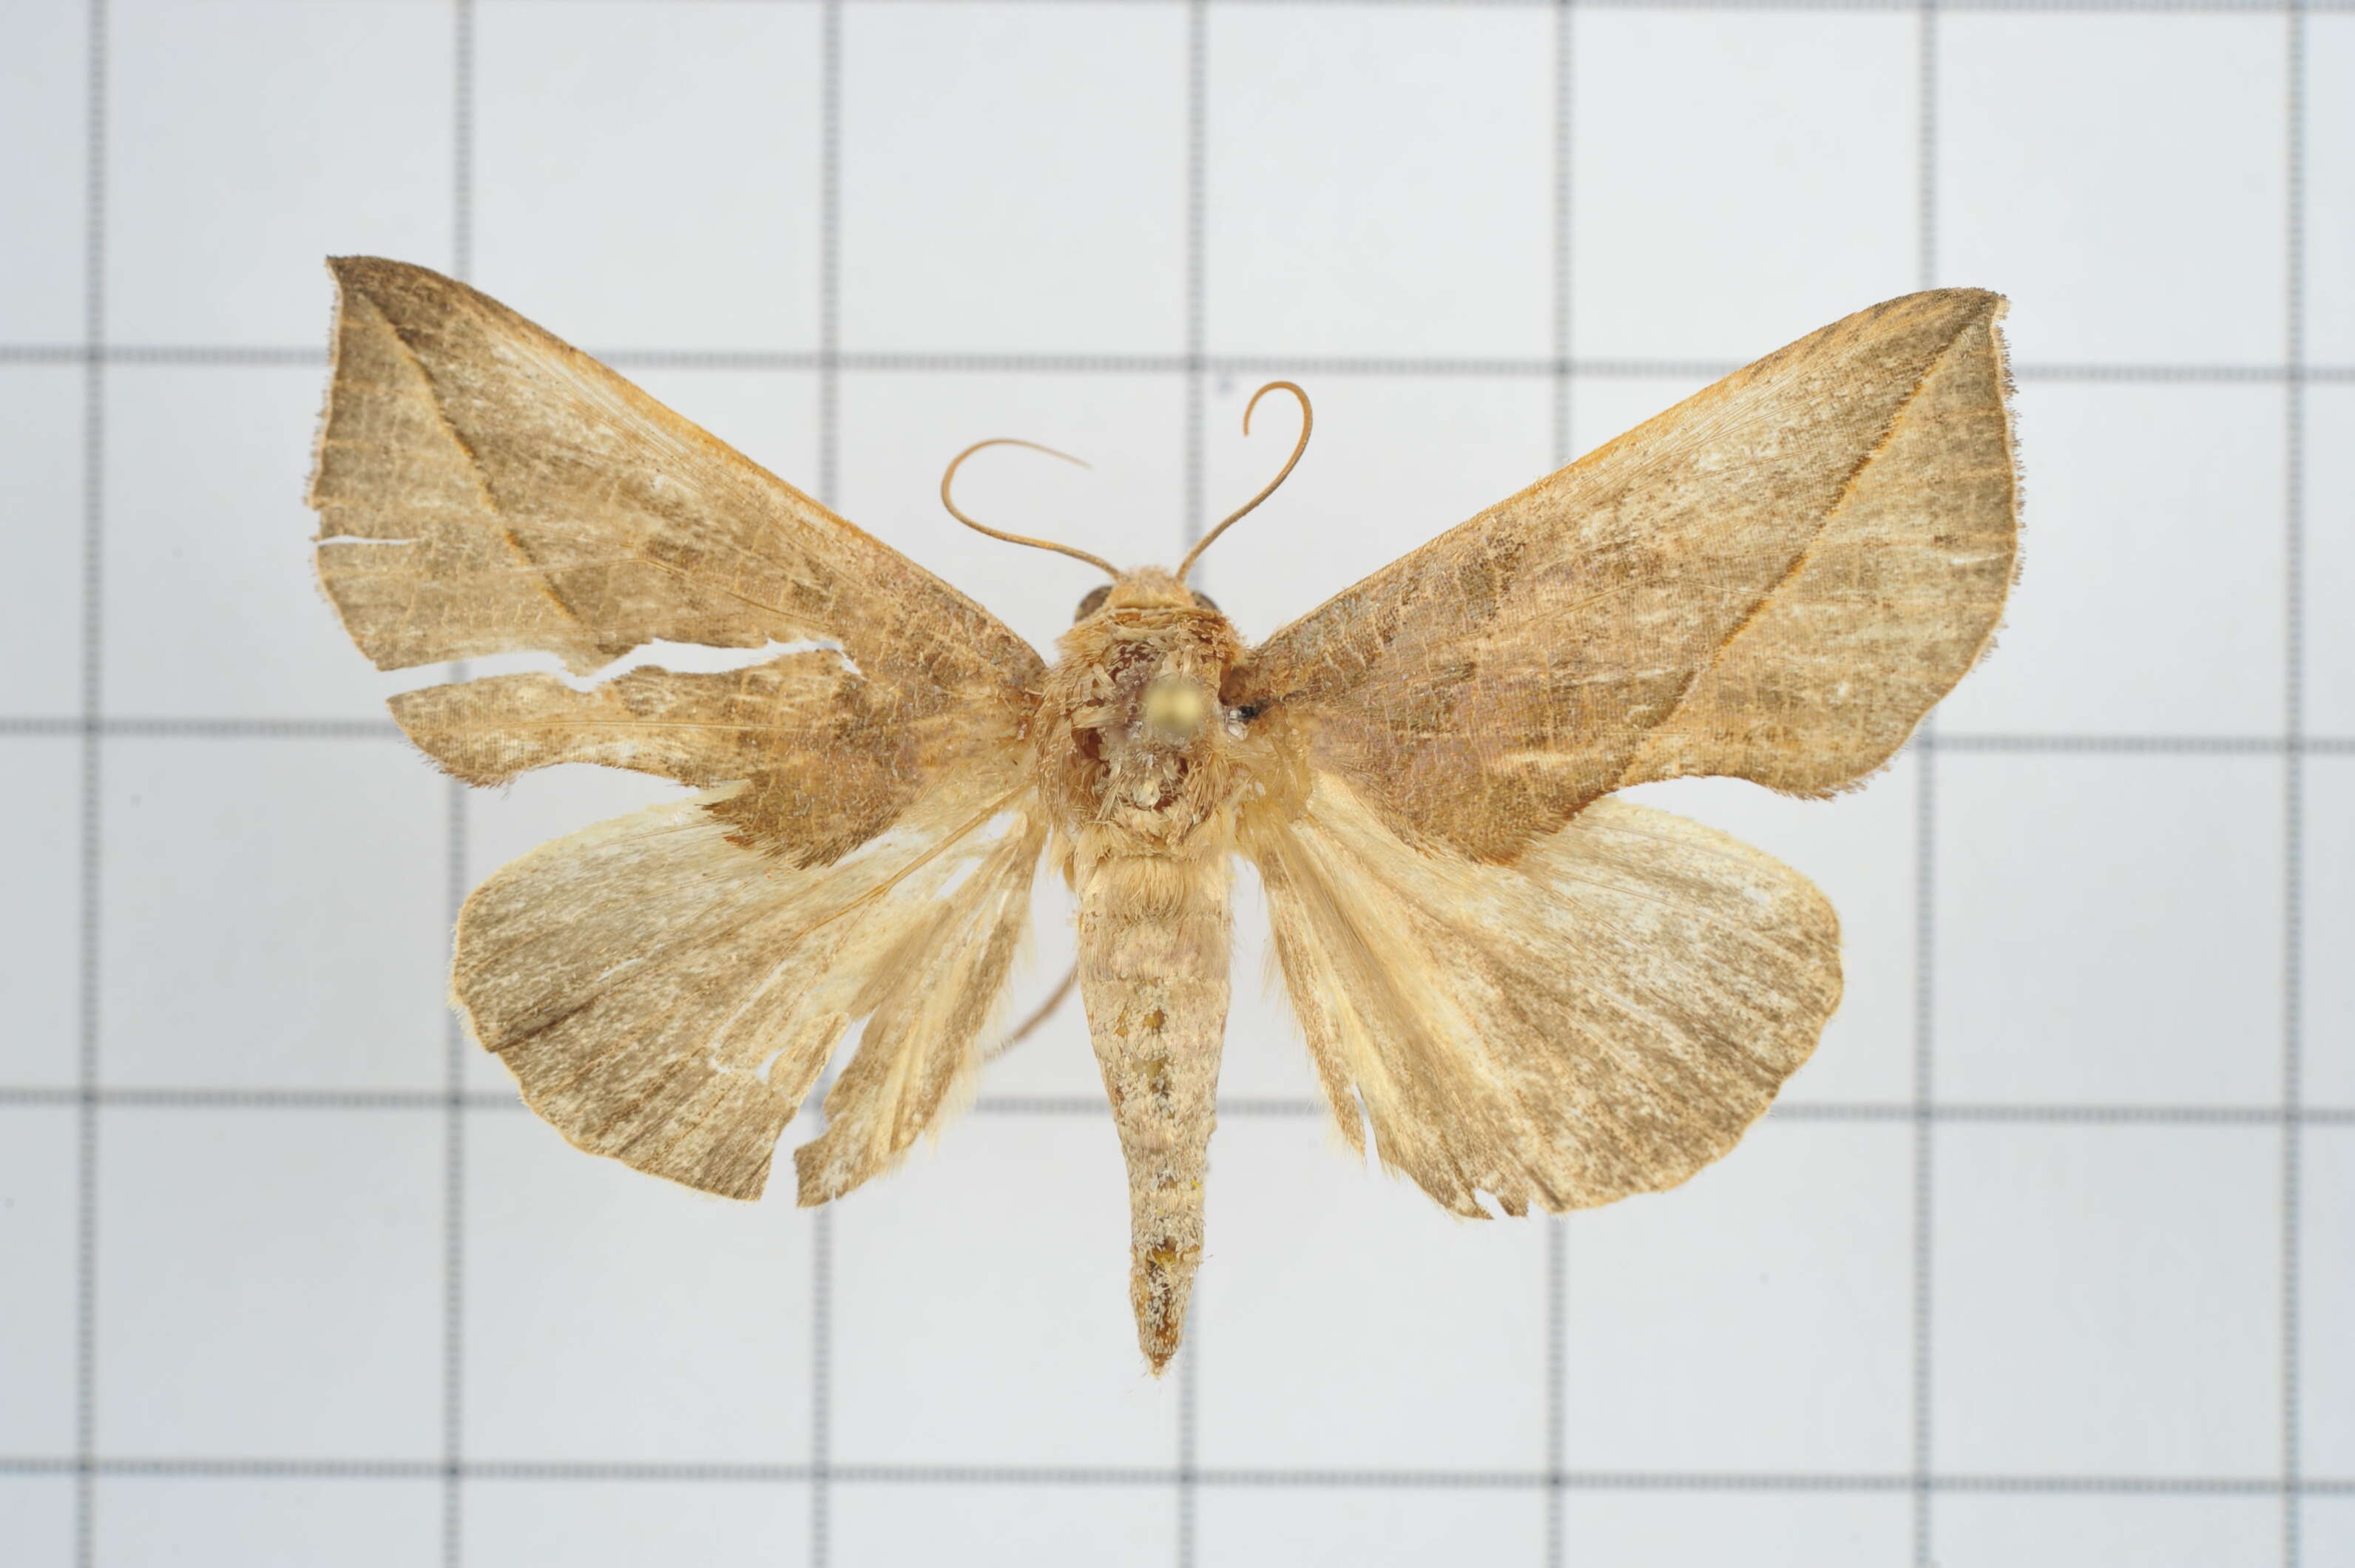 Image of Calyptra minuticornis Guenée 1852